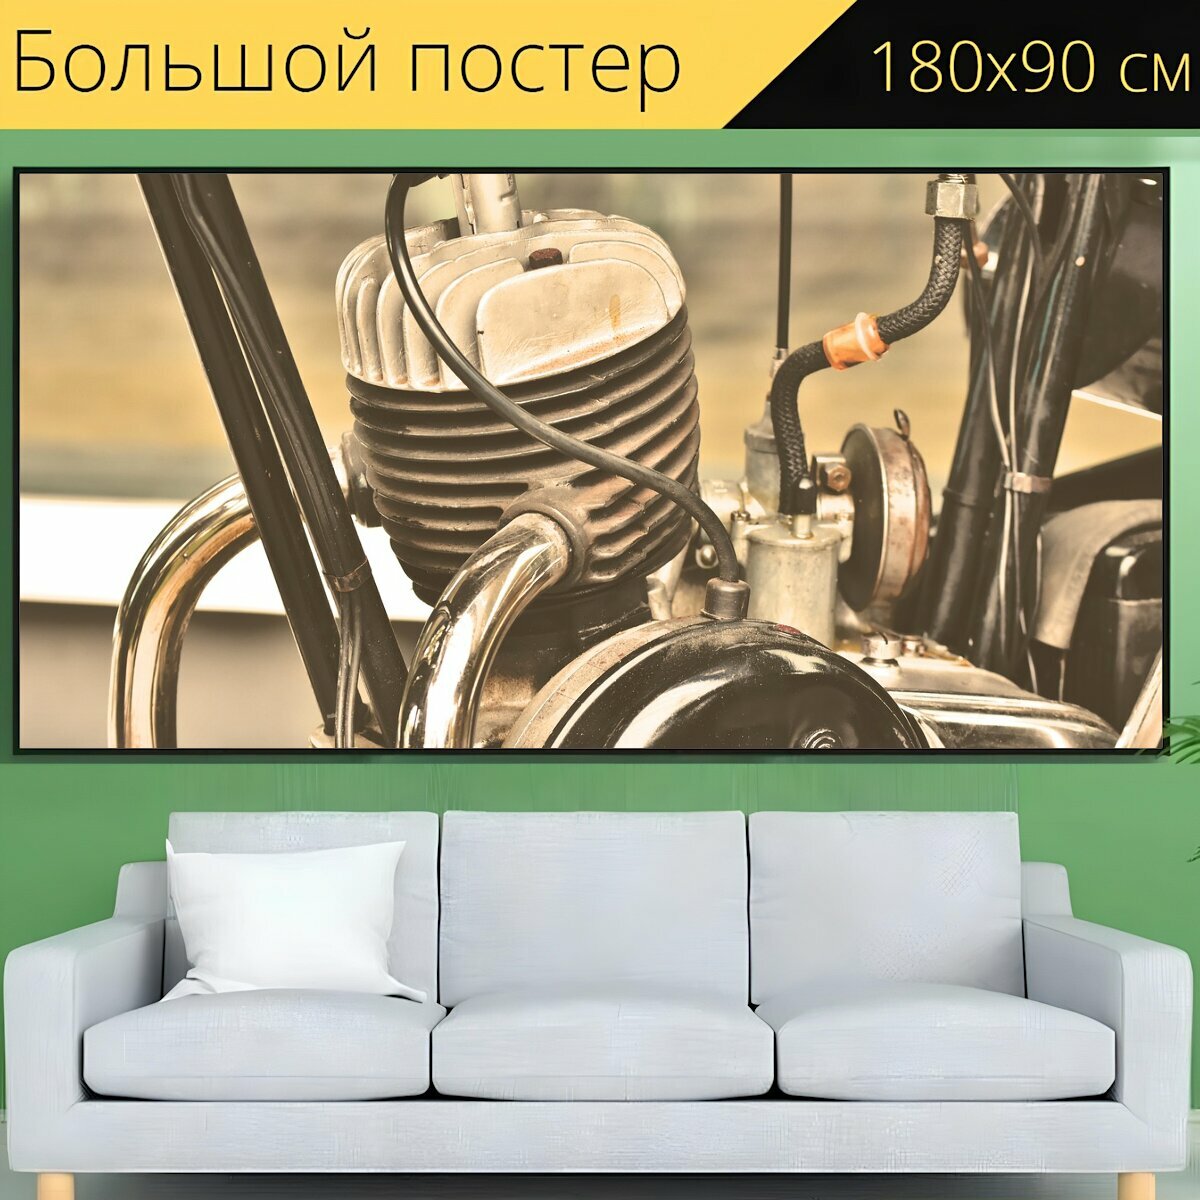 Большой постер "Двигатель двигатель мотоцикла старинный автомобиль" 180 x 90 см. для интерьера